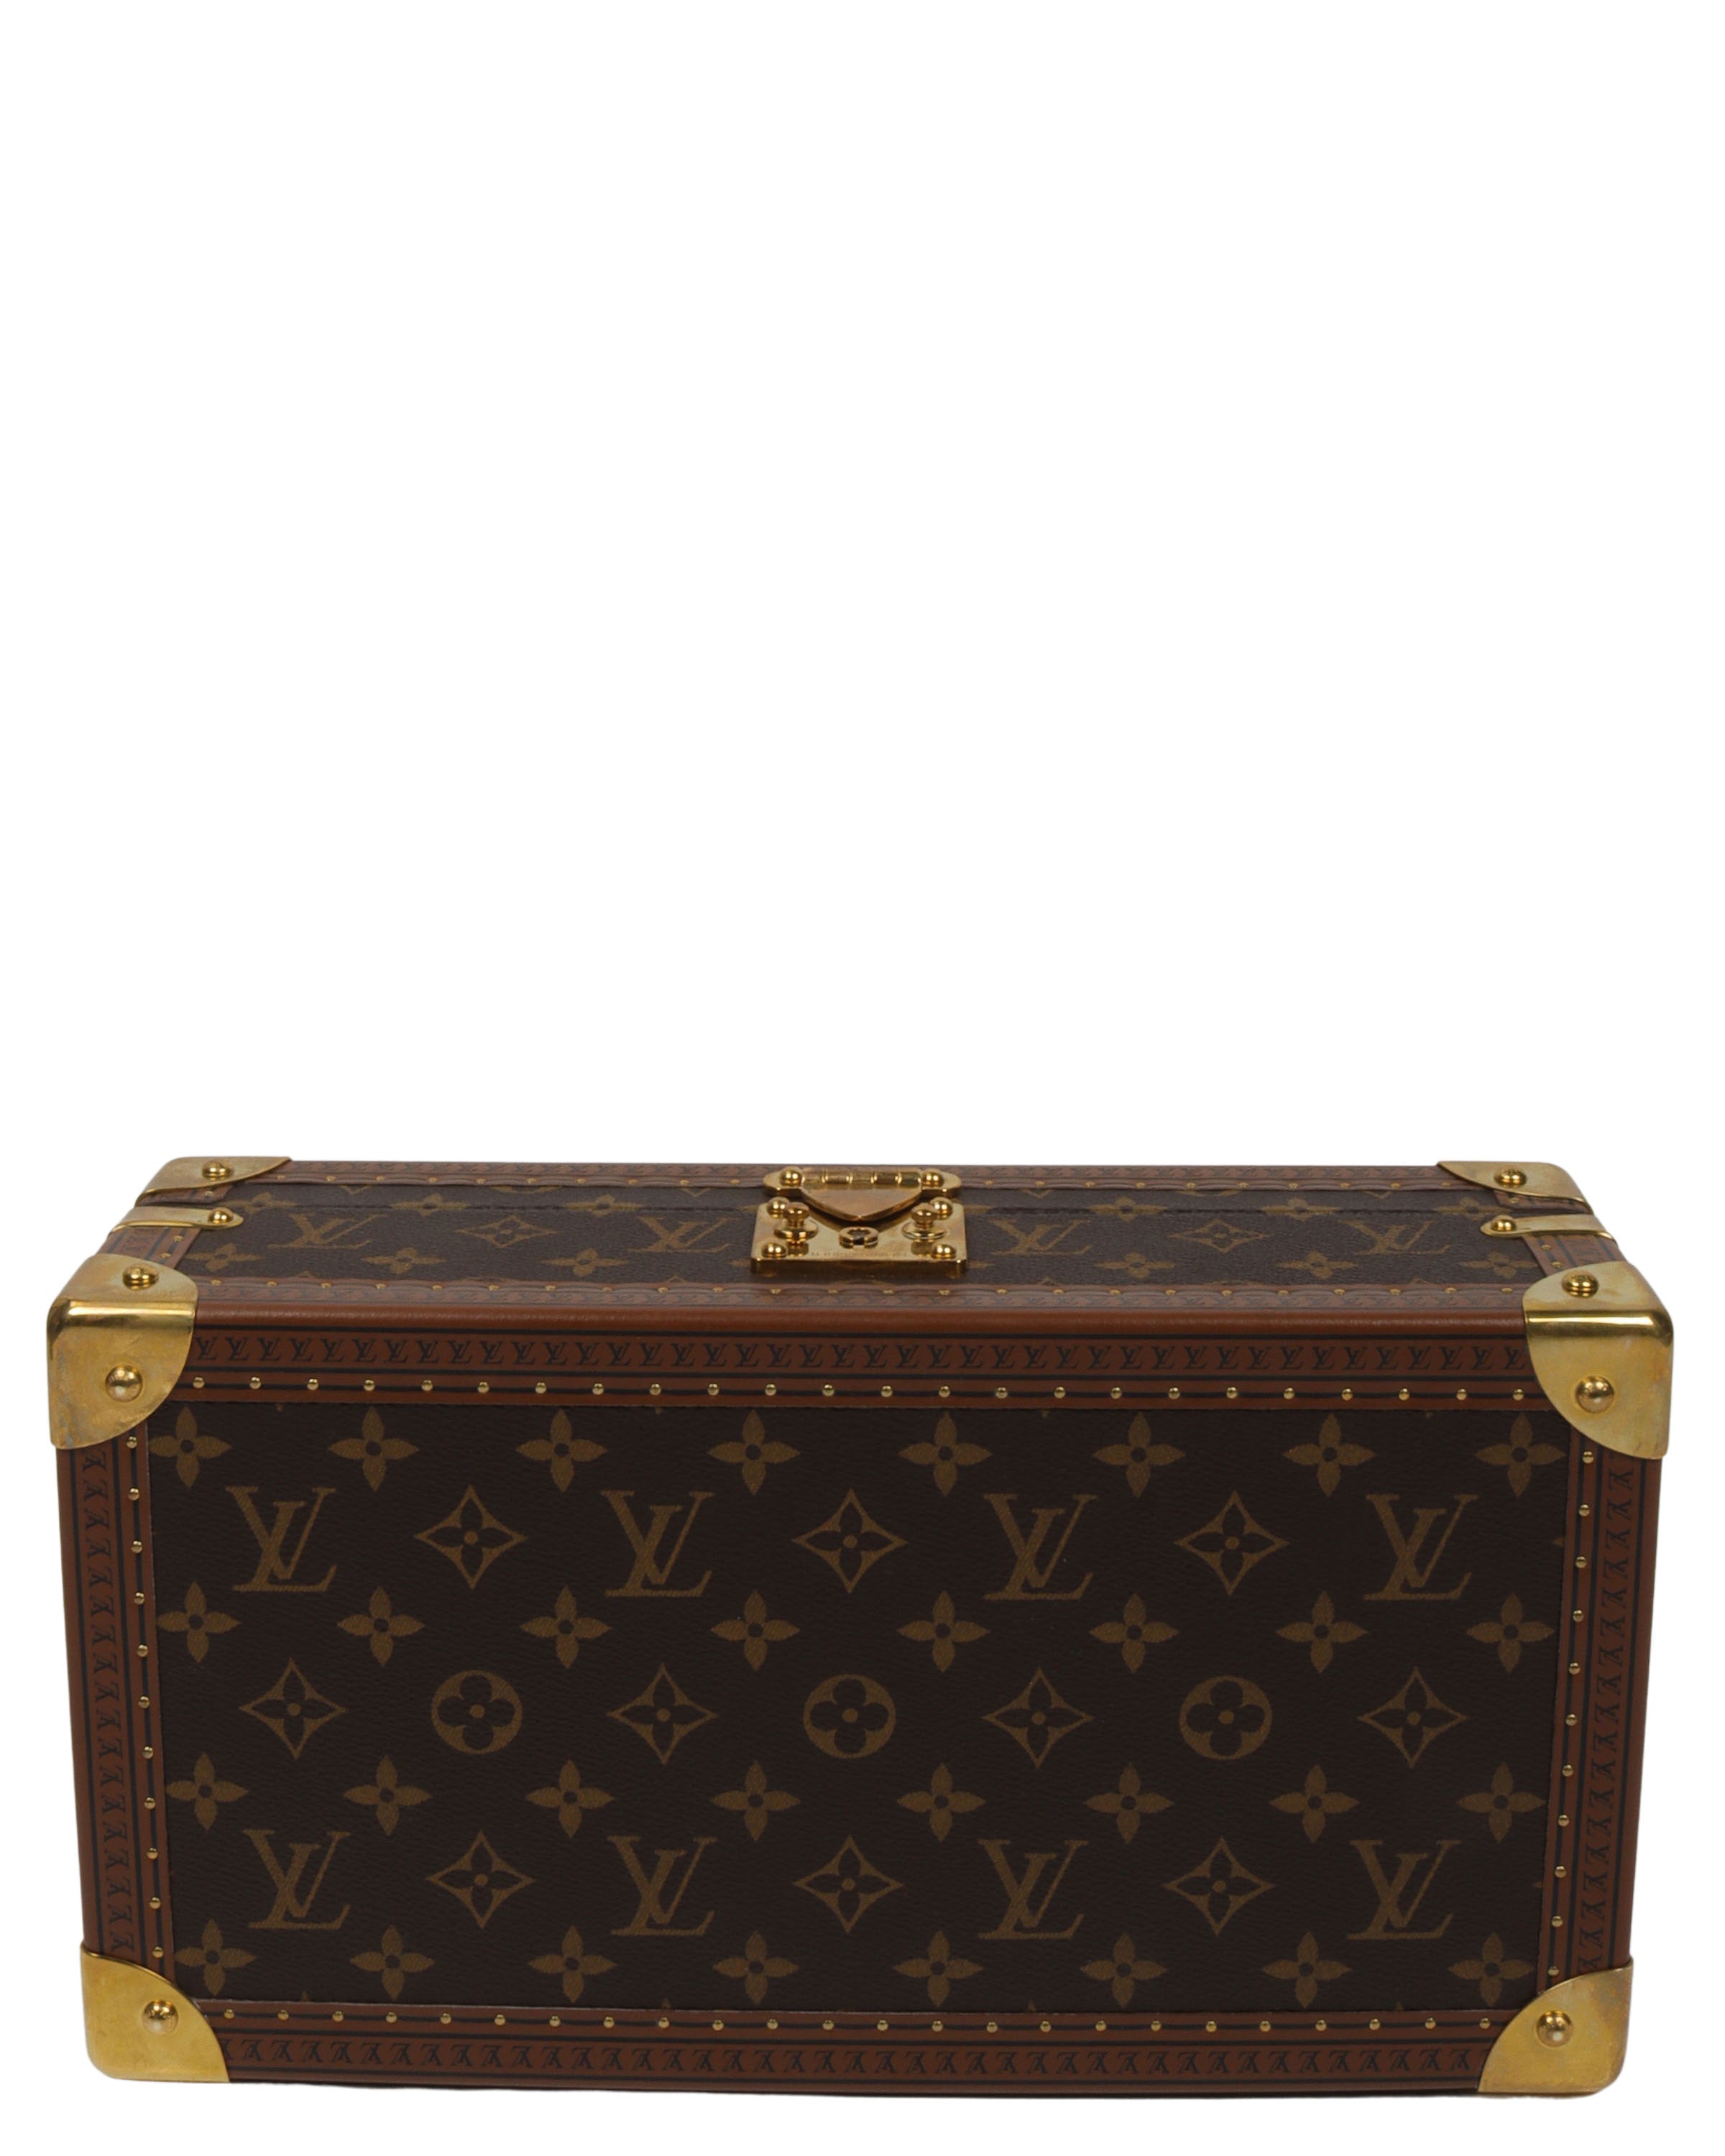 Shop Louis Vuitton 8 watch case (M20039) by 碧aoi